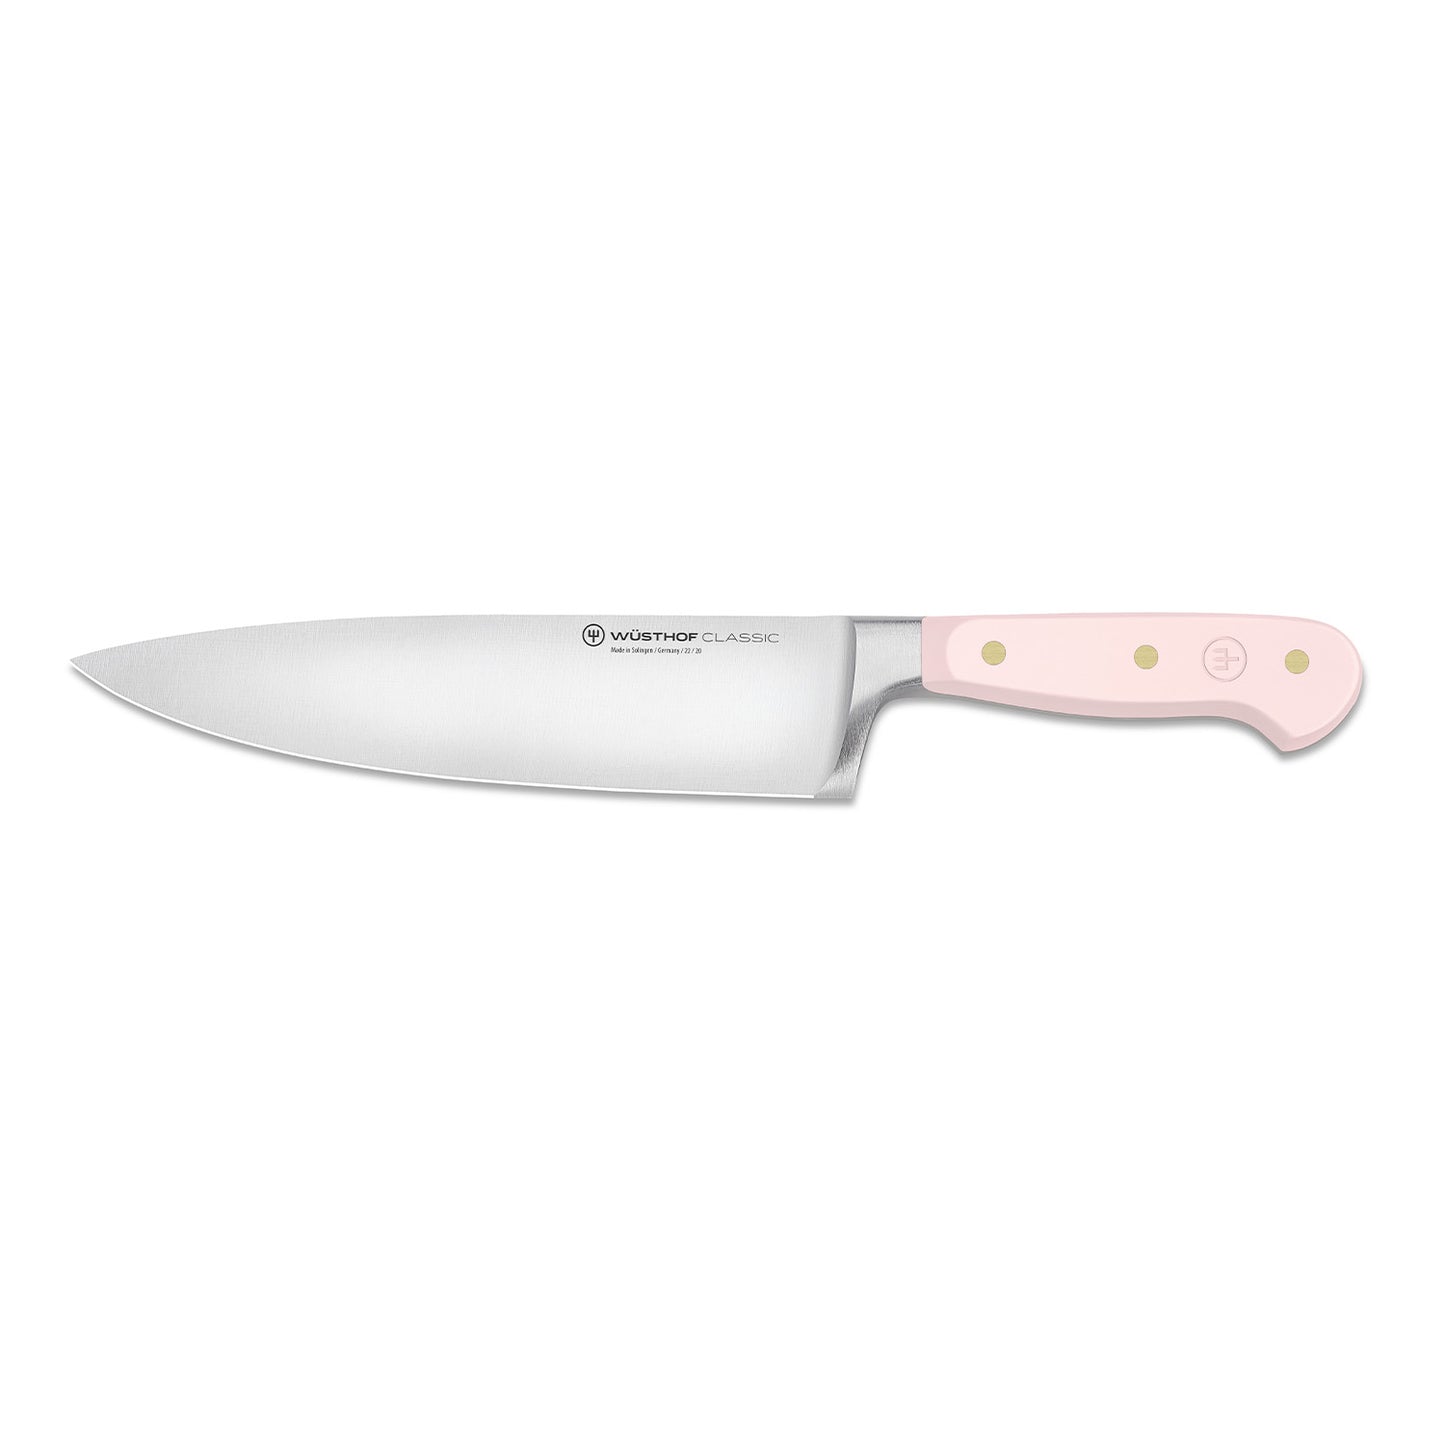 Classic Pink Himalayan Salt 8" Chef's Knife